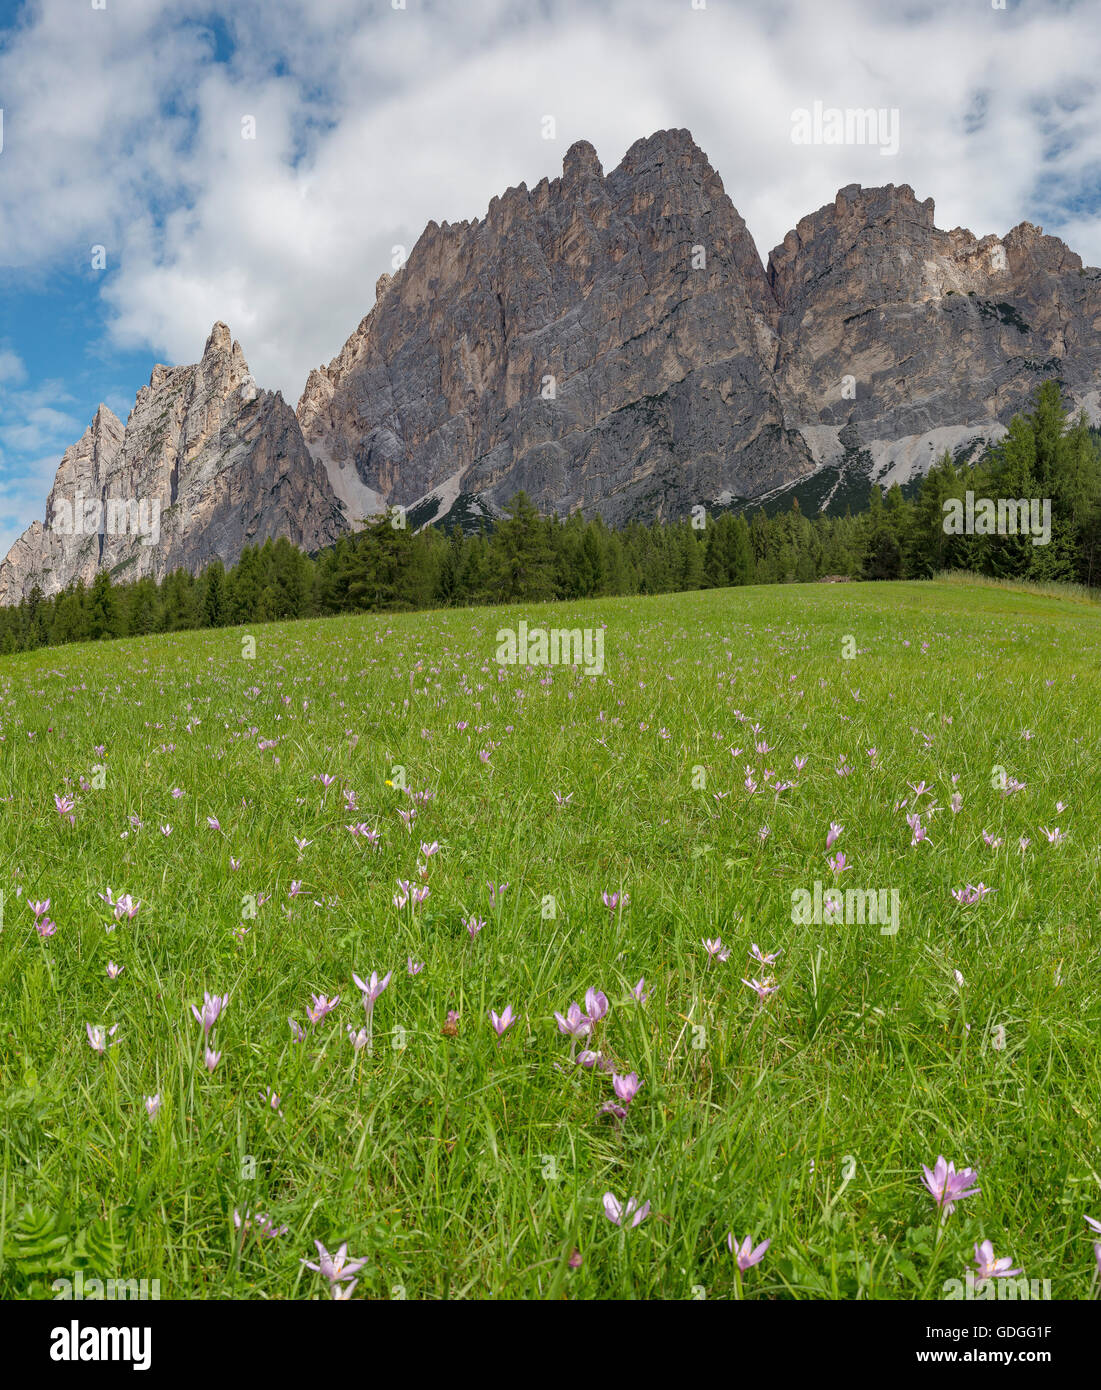 Cortina d'Ampezzo,Italie,montagne Dolomites Pomagagnon,champ avec crocus d'automne Banque D'Images